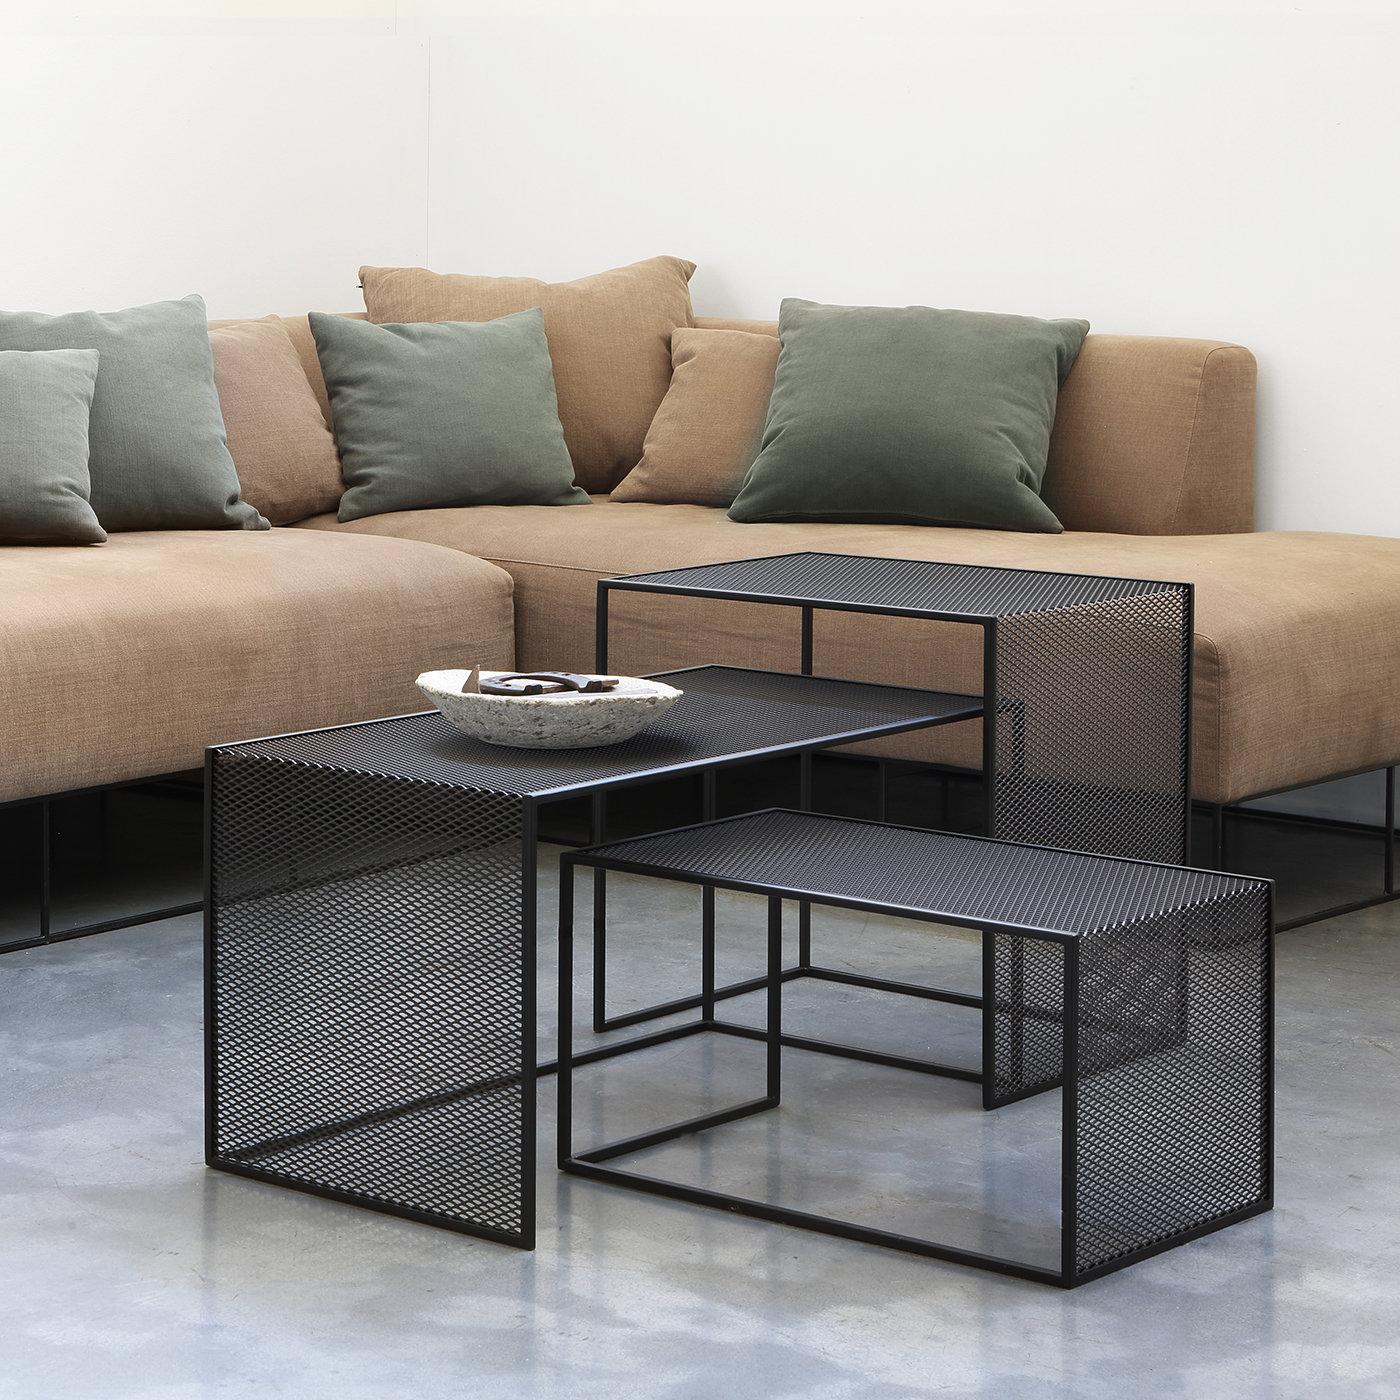 Hautement fonctionnelles et au design original, les tables basses Tristano sont réalisées avec un cadre en tube d'acier massif de 10 x 10 mm et le plateau et les côtés en métal déployé. La composition de trois tables de tailles différentes (40 x 80